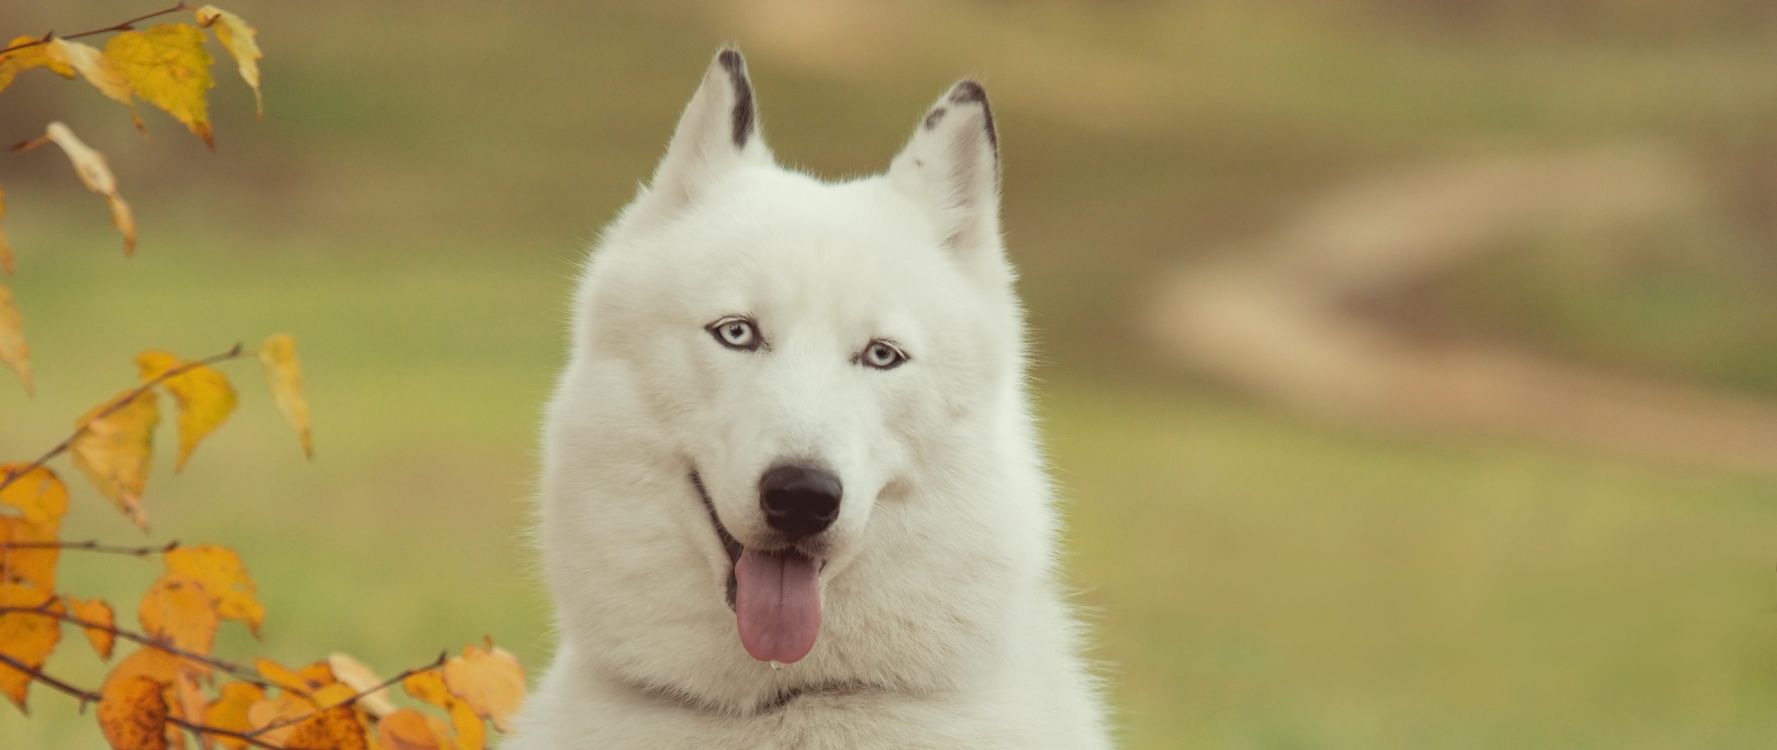 Weißer Wolf Mit Herausgestreckter Zunge. Wallpaper in 2560x1080 Resolution